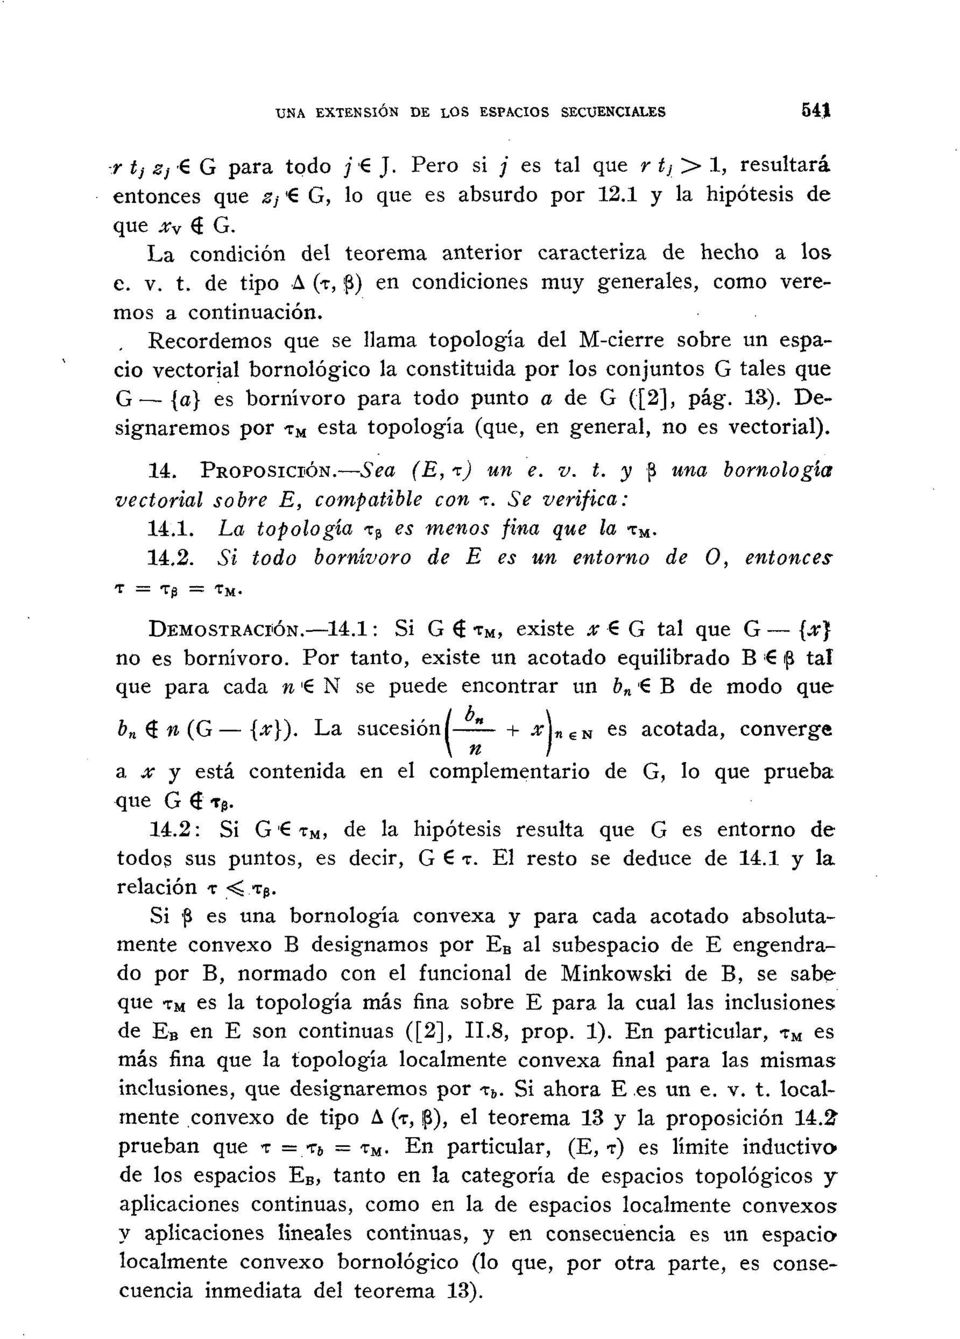 Recordemos que se llama topología del M-cierre sobre un espacio vectorial bornológico la constituida por los conjuntos G tales que G {a} es bornívoro para todo punto a de G ([2], pág. 13).